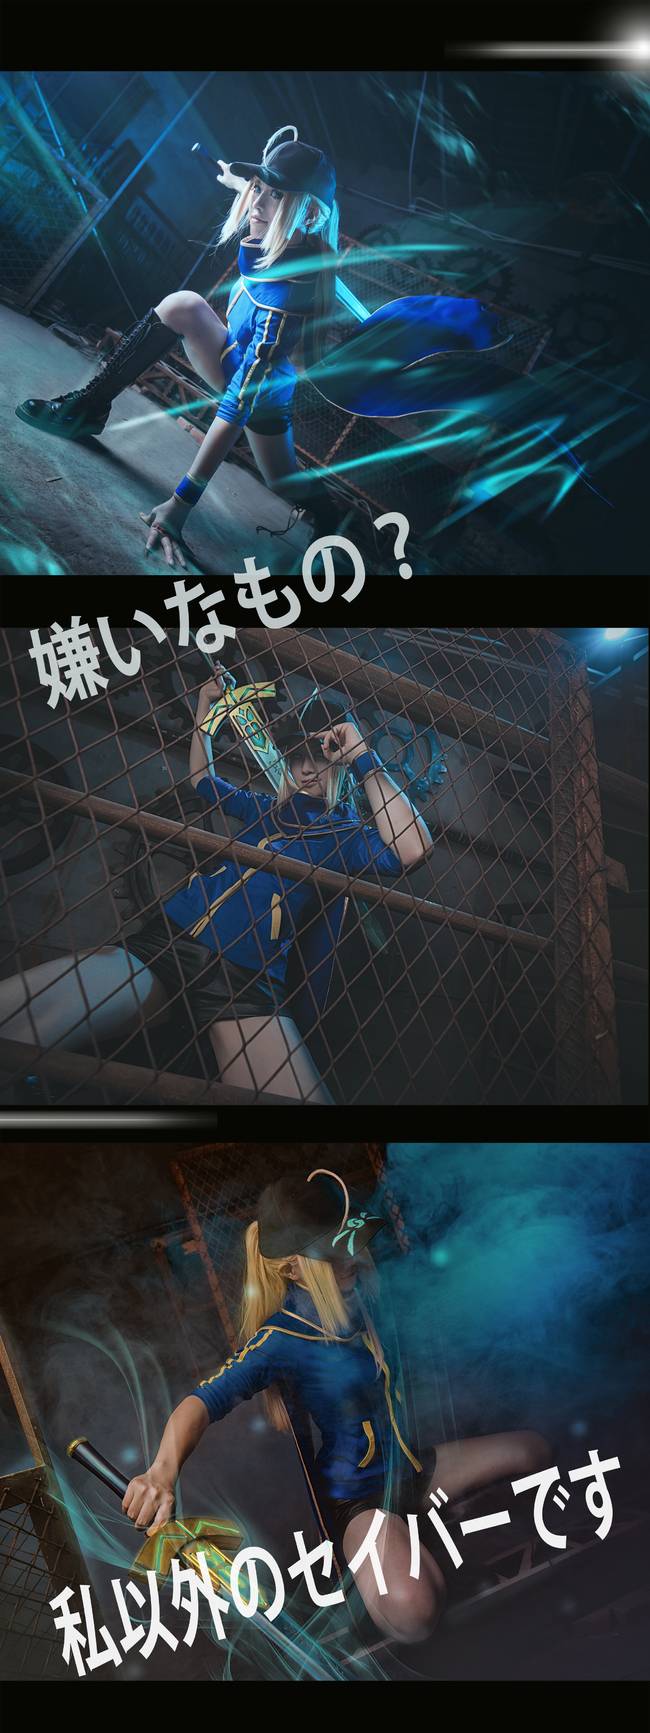 Cosplay福利/FateGrandOrder迷之女主角X性感美腿cosplay福利